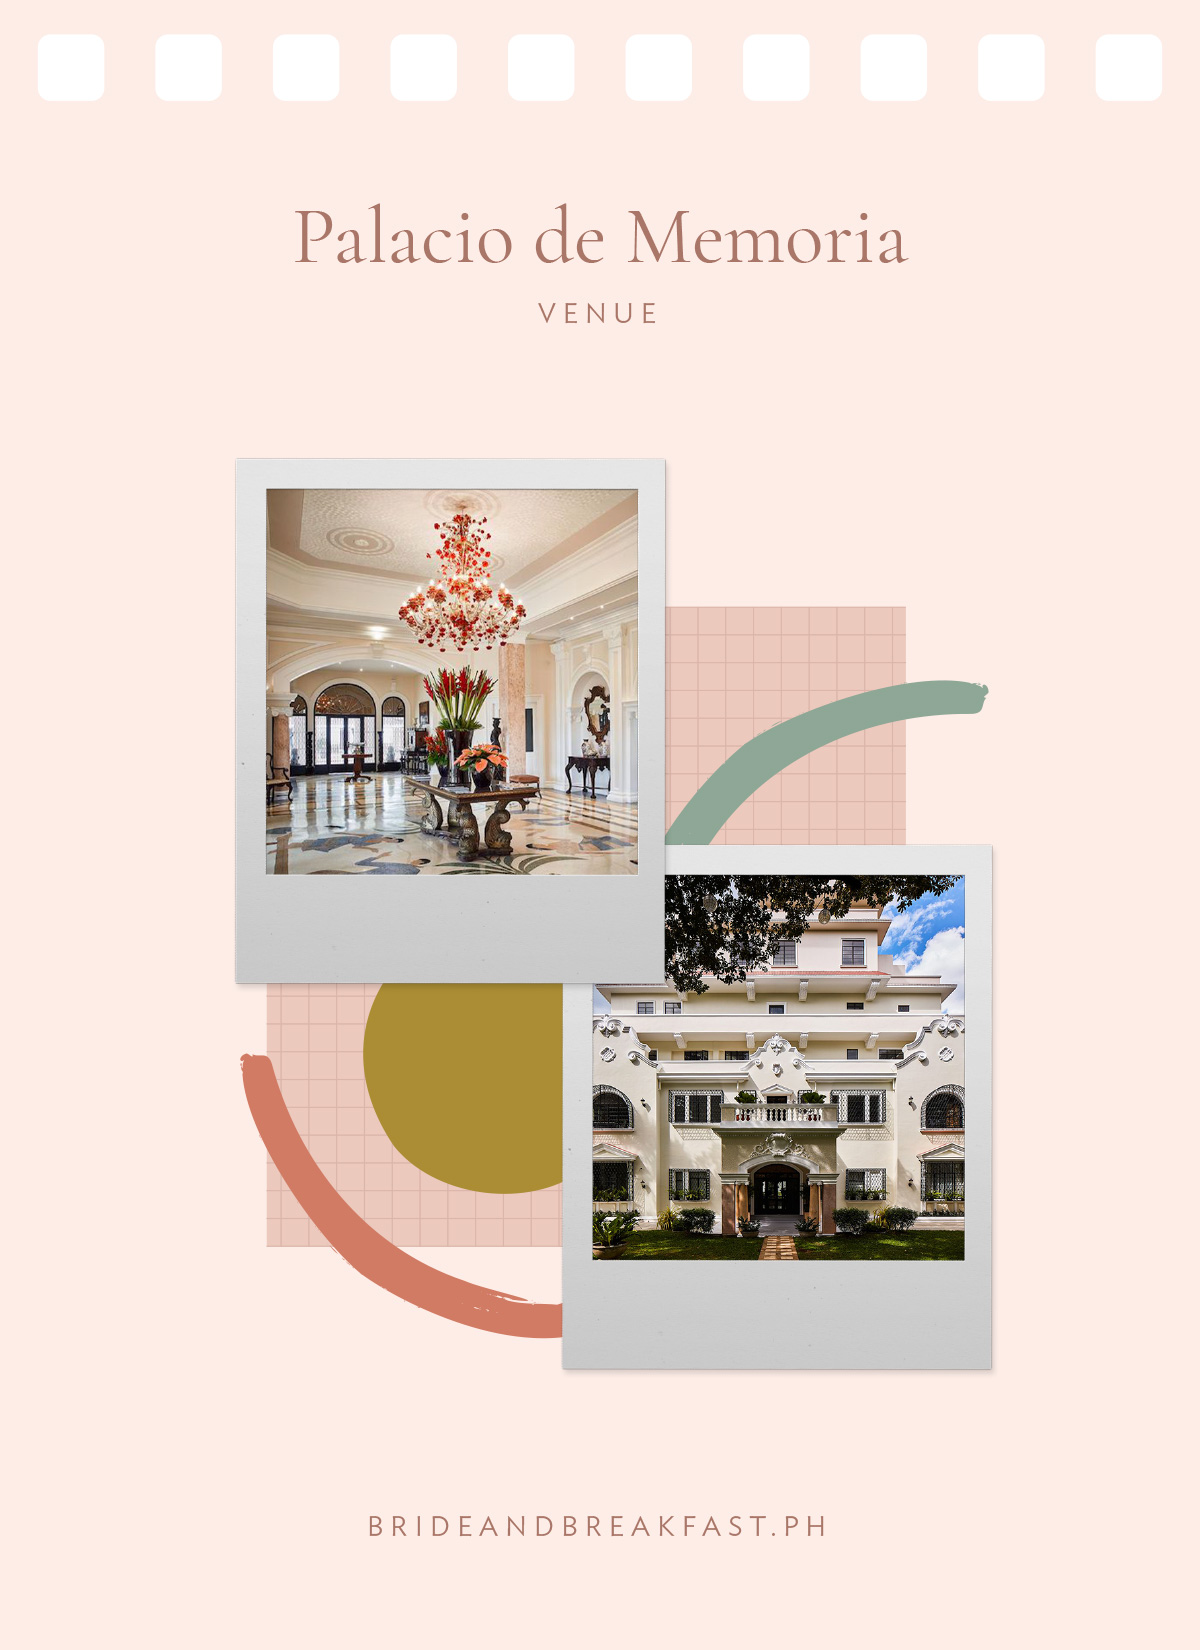 Palacio de Memoria (Venue)